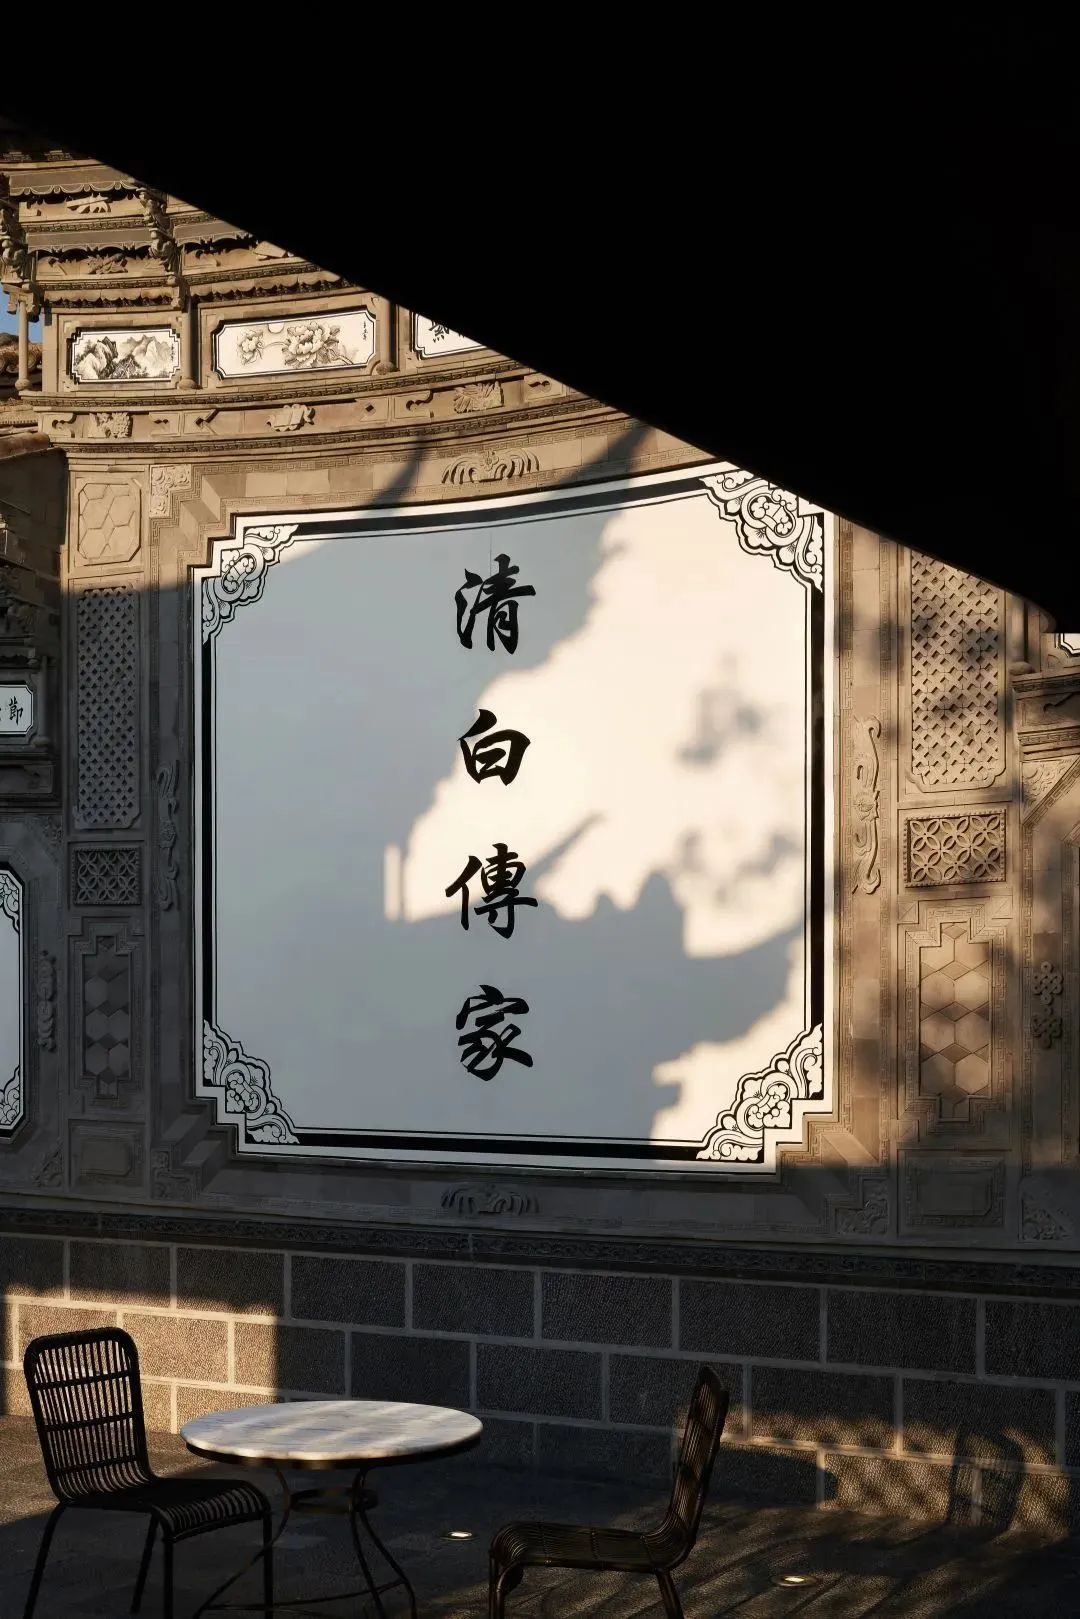 清白传家四个字的传统照壁彰示着杨永娟以及设计师——相上文象李